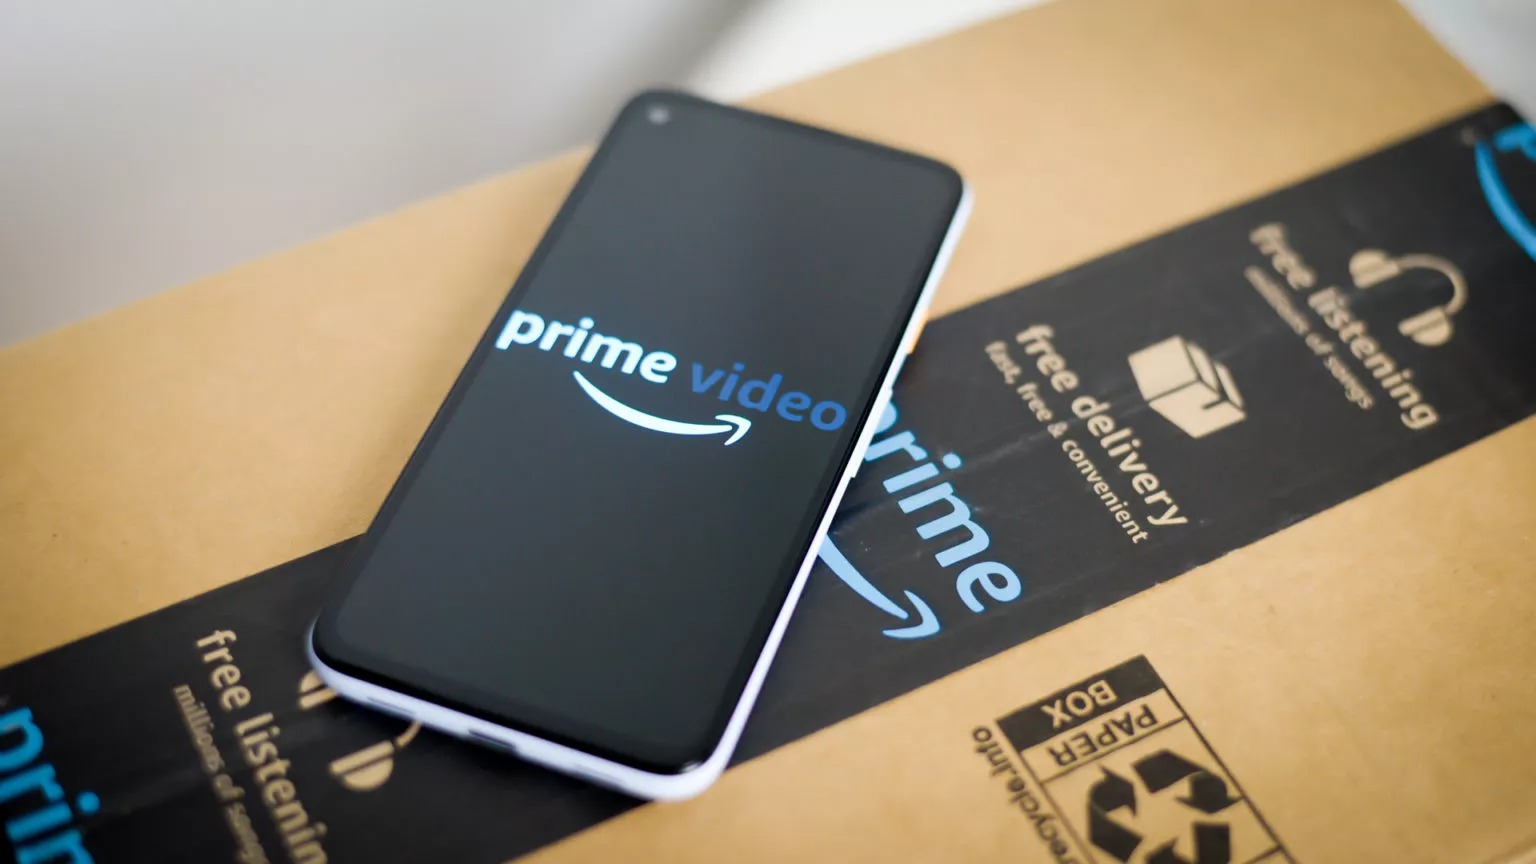 Περισσότερες πληροφορίες για "Η Amazon παρουσιάζει νέο ετήσιο συνδρομητικό πακέτο του Prime Video στην Ινδία με κόστος 7,3 δολάρια"